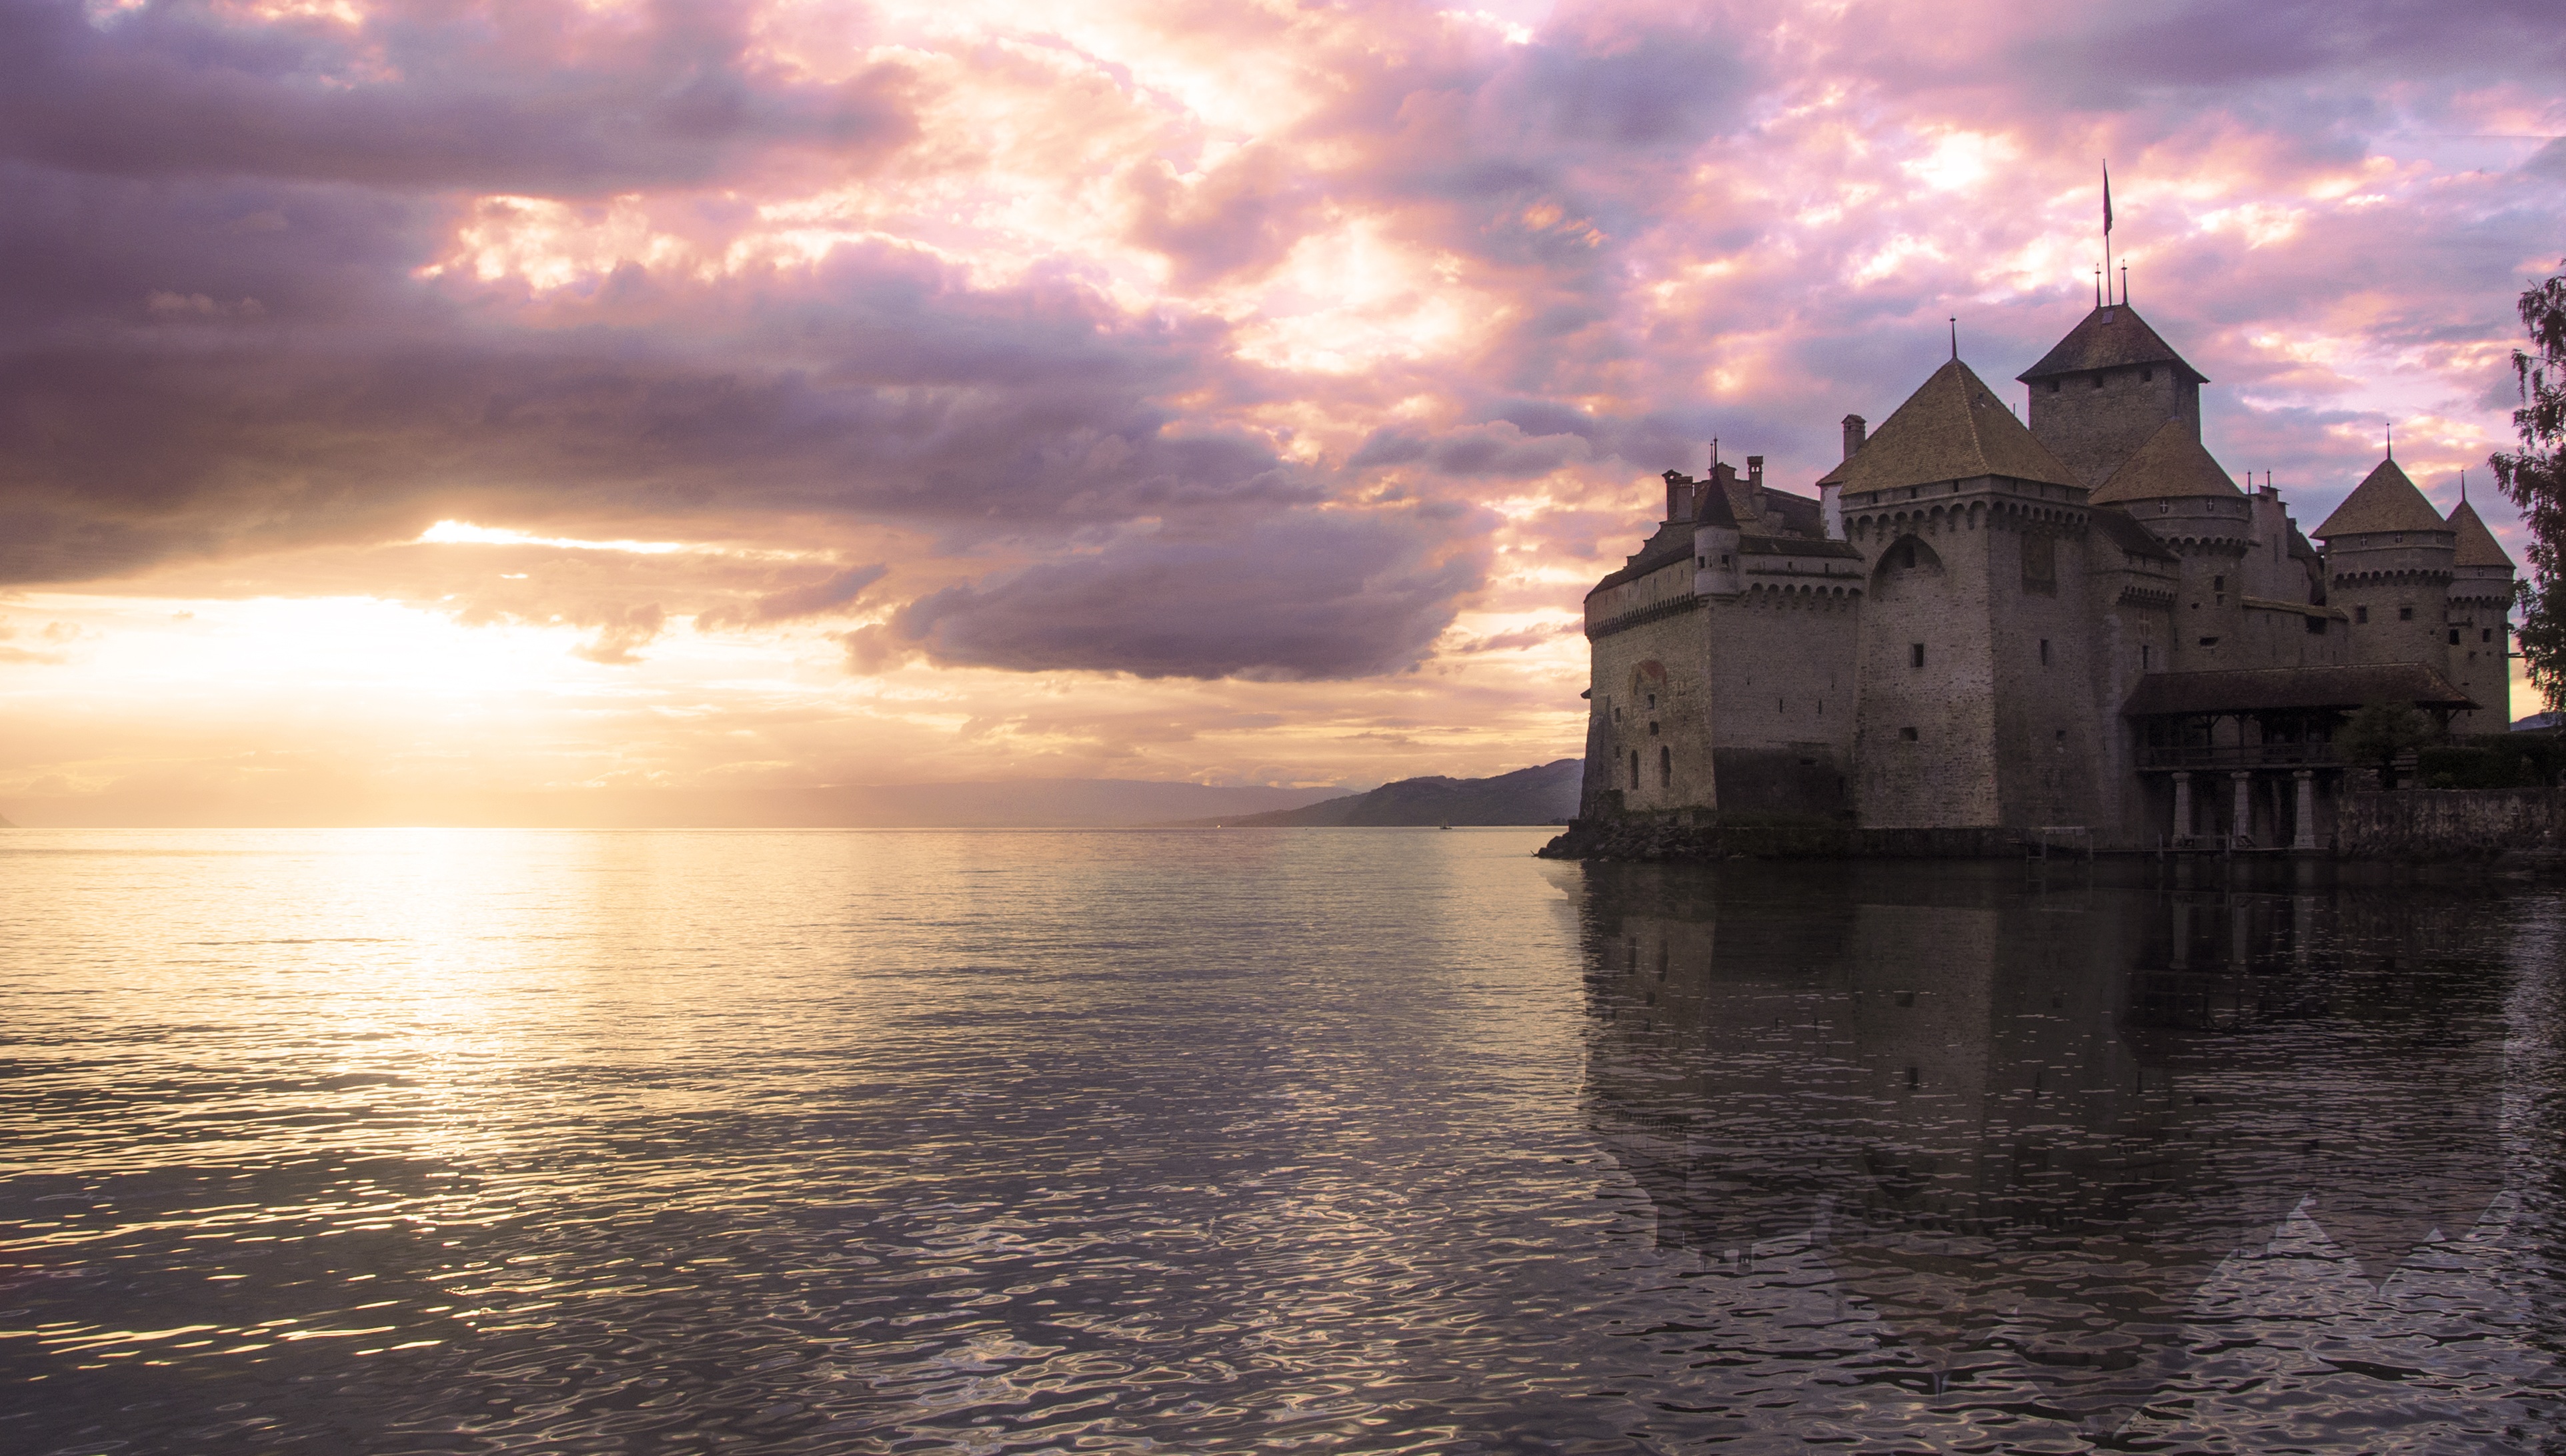 A castle in Switzerland by blanca_rovira